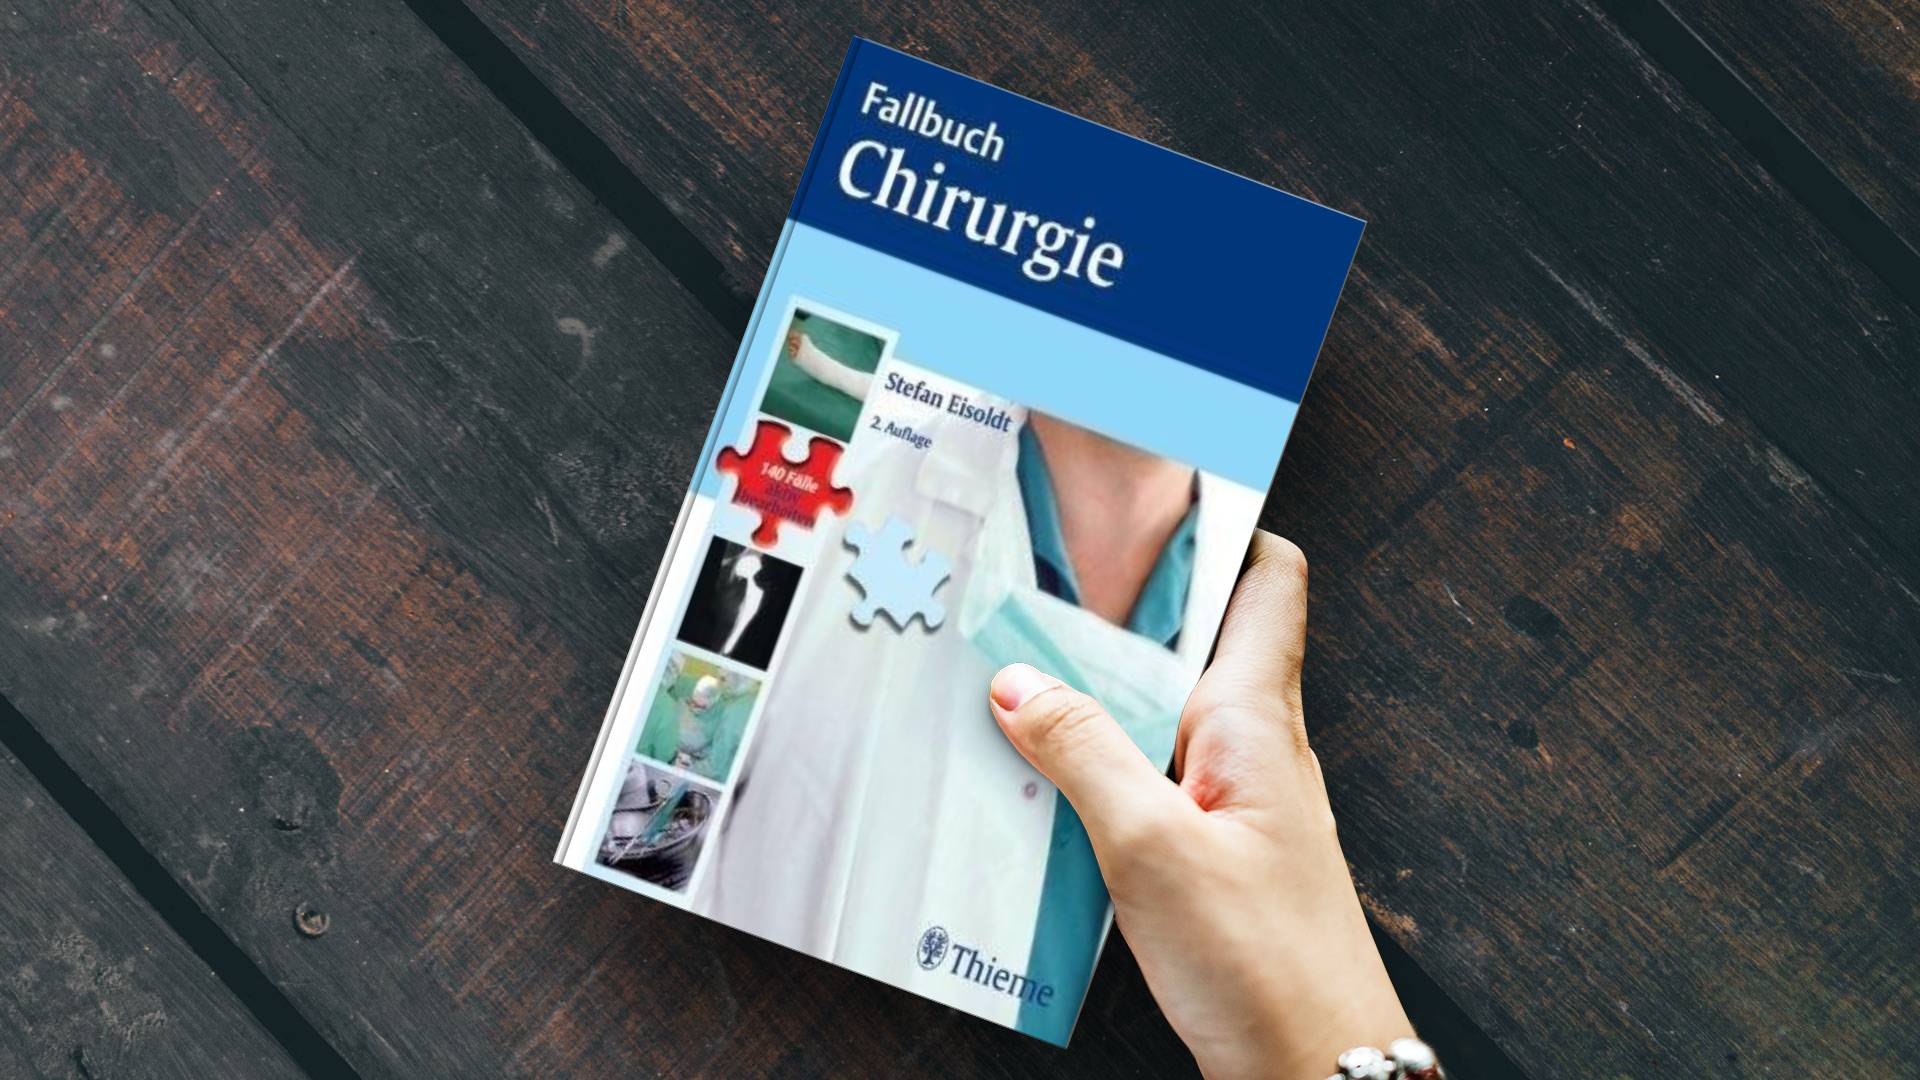 خرید کتاب زبان | زبان استور | Fallbuch Chirurgie | zabanstore